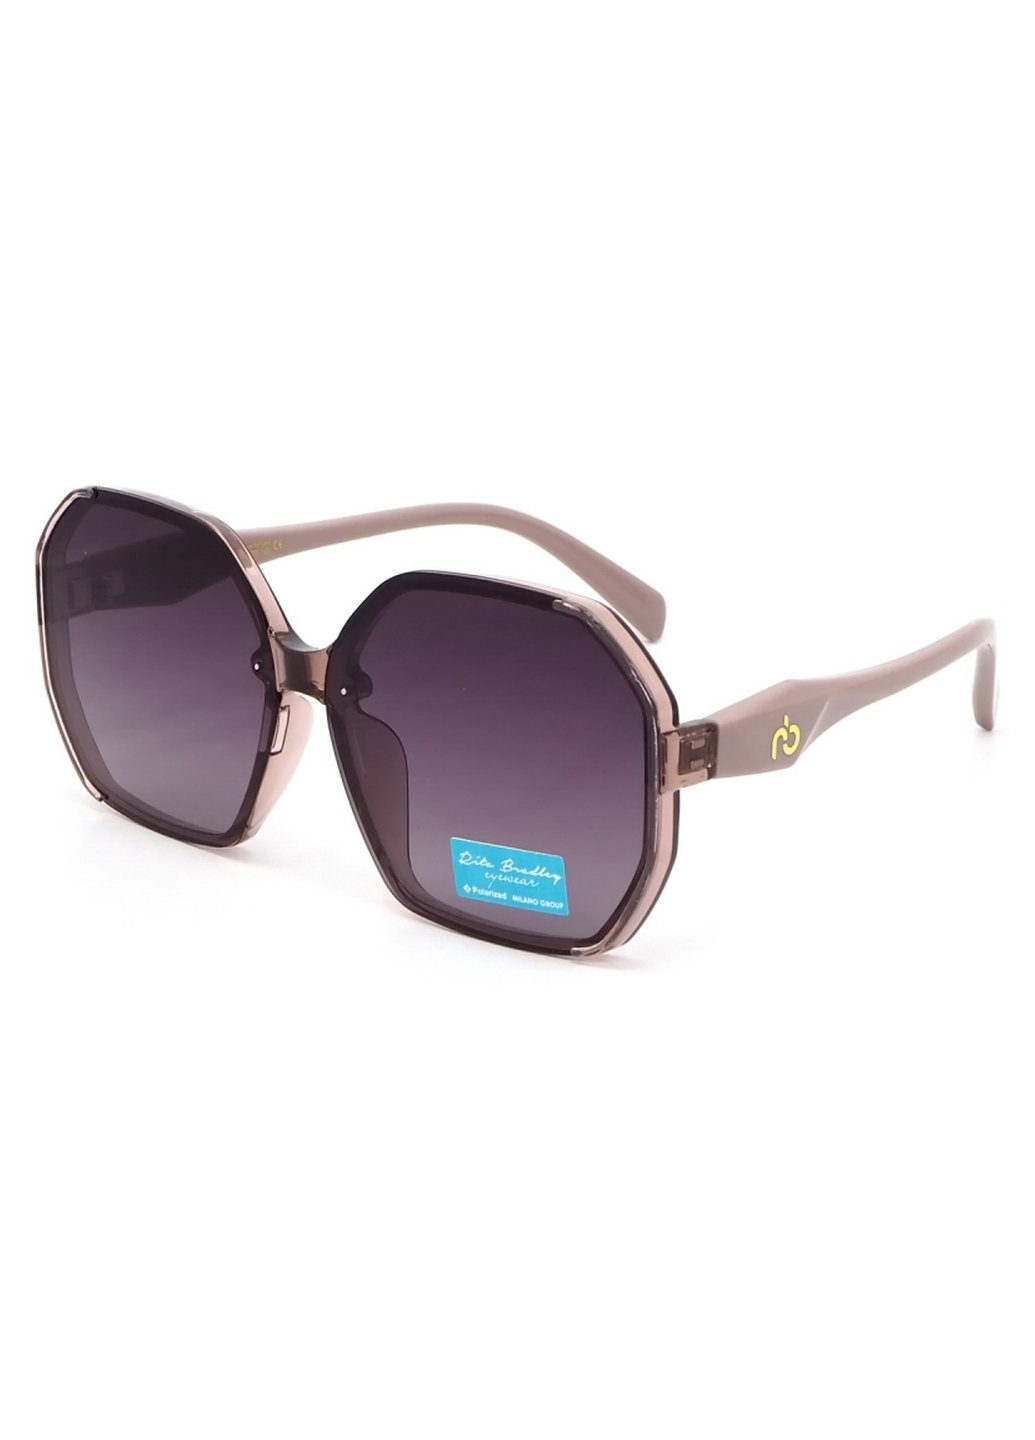 Купить Женские солнцезащитные очки Rita Bradley с поляризацией RB729 112070 в интернет-магазине